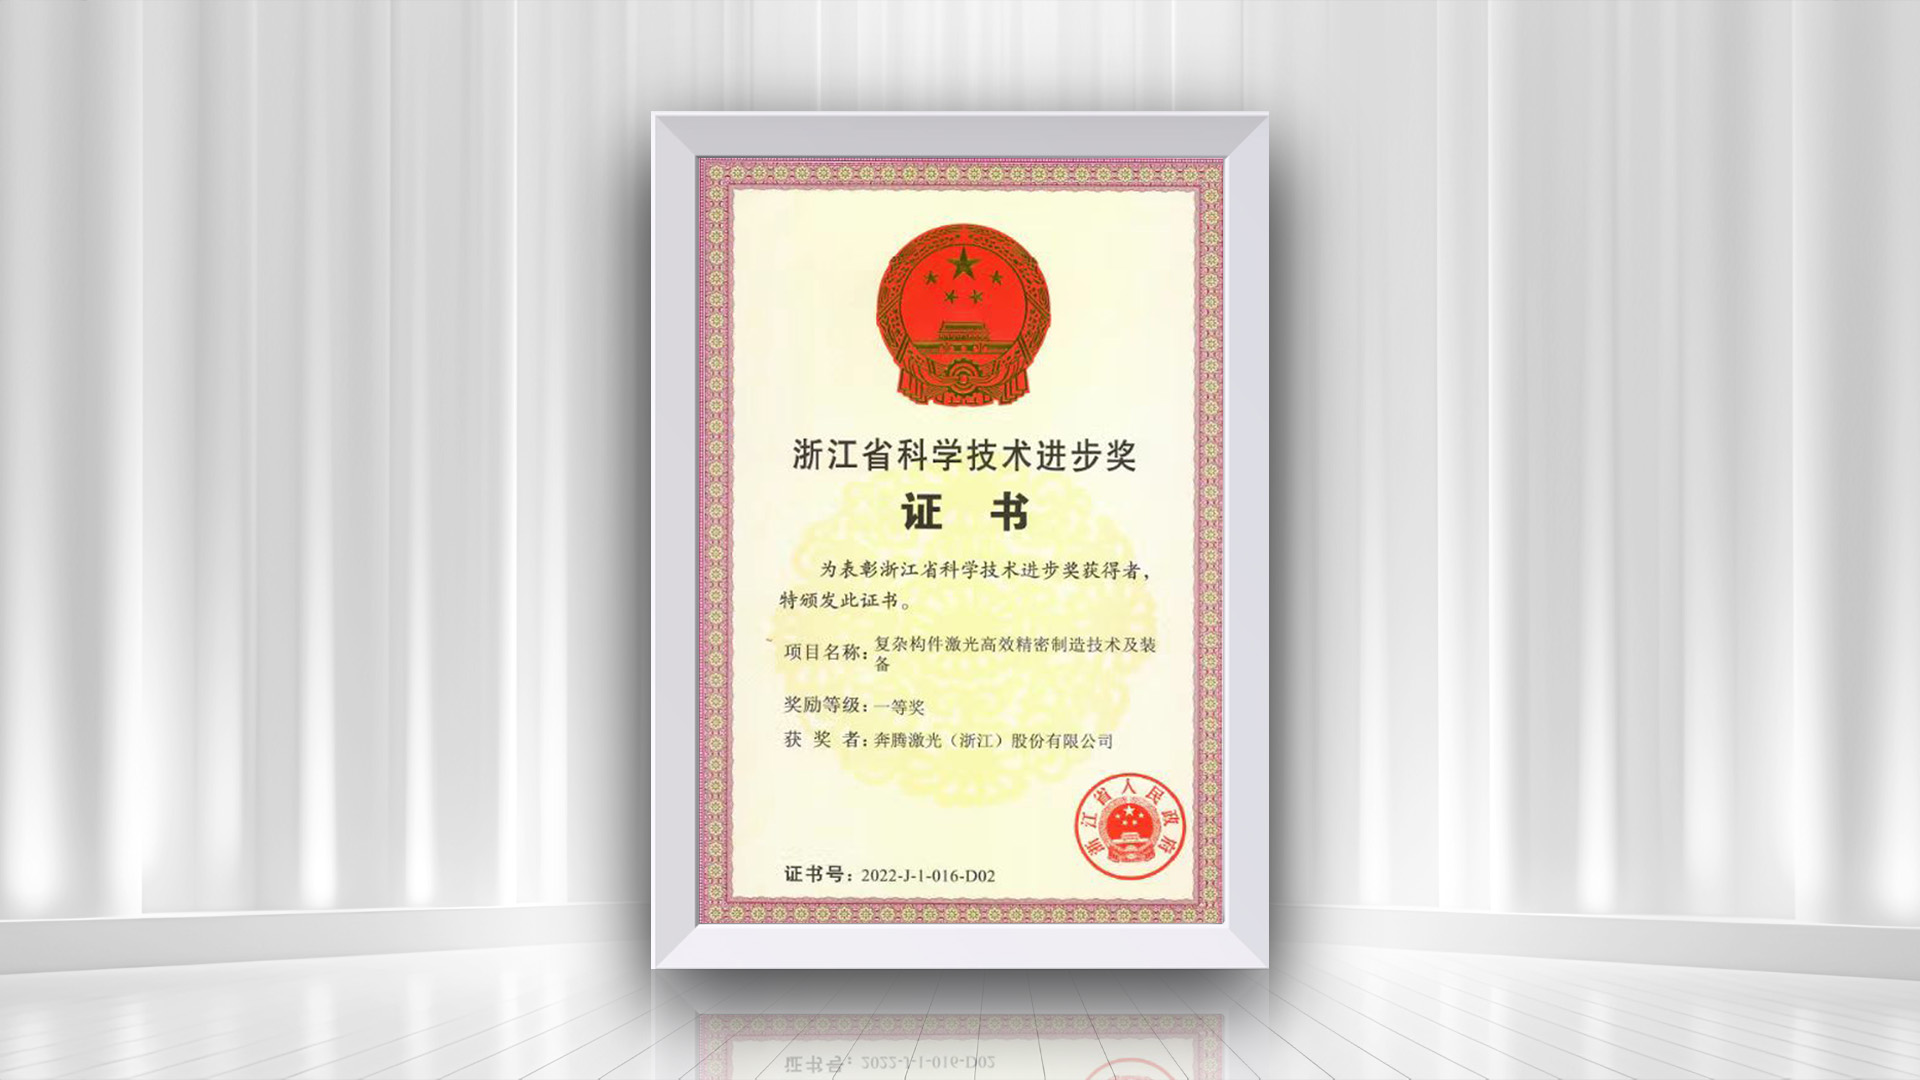 Gratulálunk a Penta Lasernek a Zhejiang Tartományi Tudományos és Technológiai Fejlesztési Díj első díjához a 